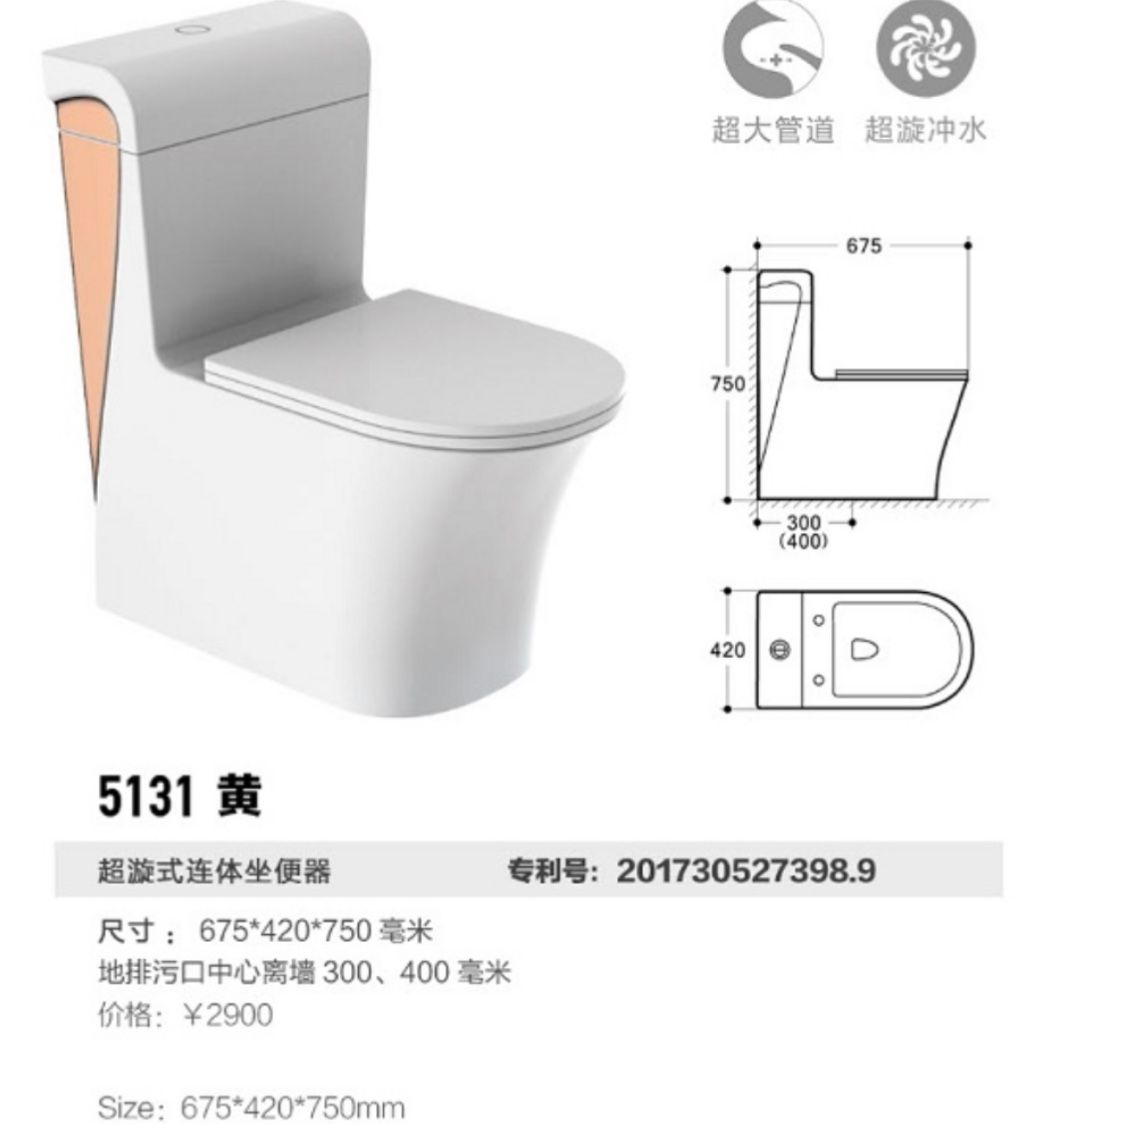 513居易卫浴原创设计超大管道超节水技术坐便器专利马桶详情2